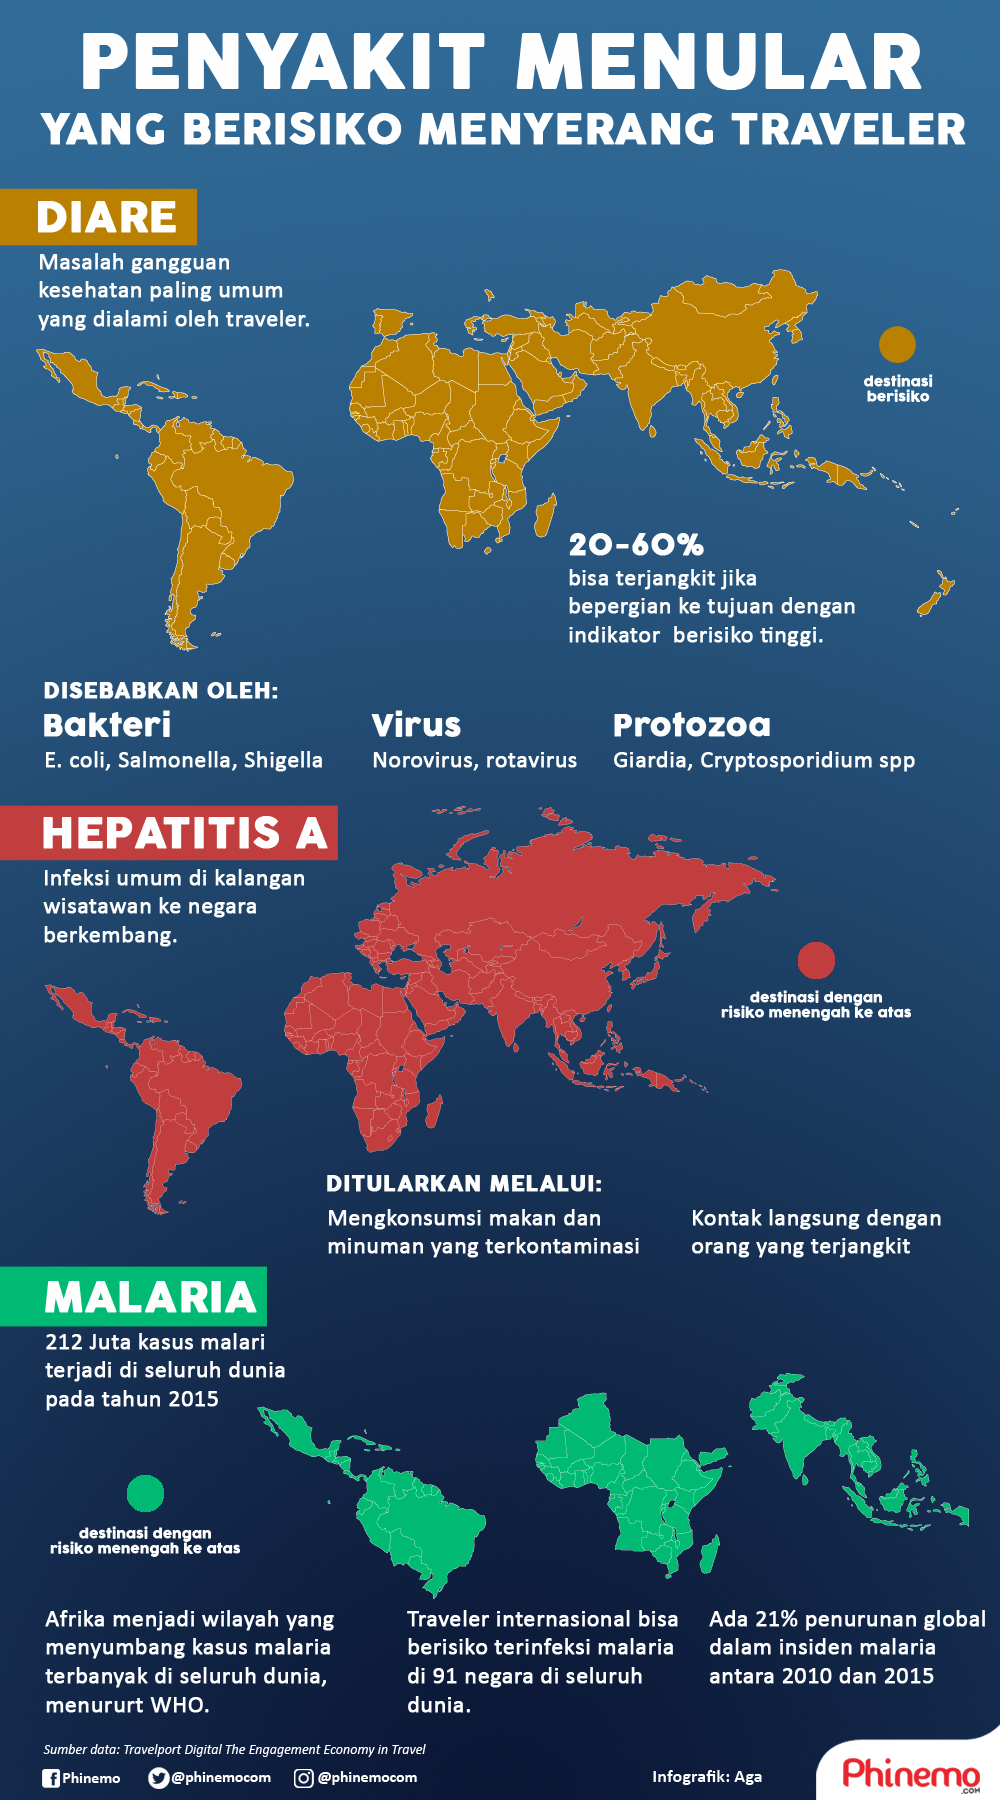 Infografik Penyakit Menular Yang Berisiko Bisa Menyerang Traveler